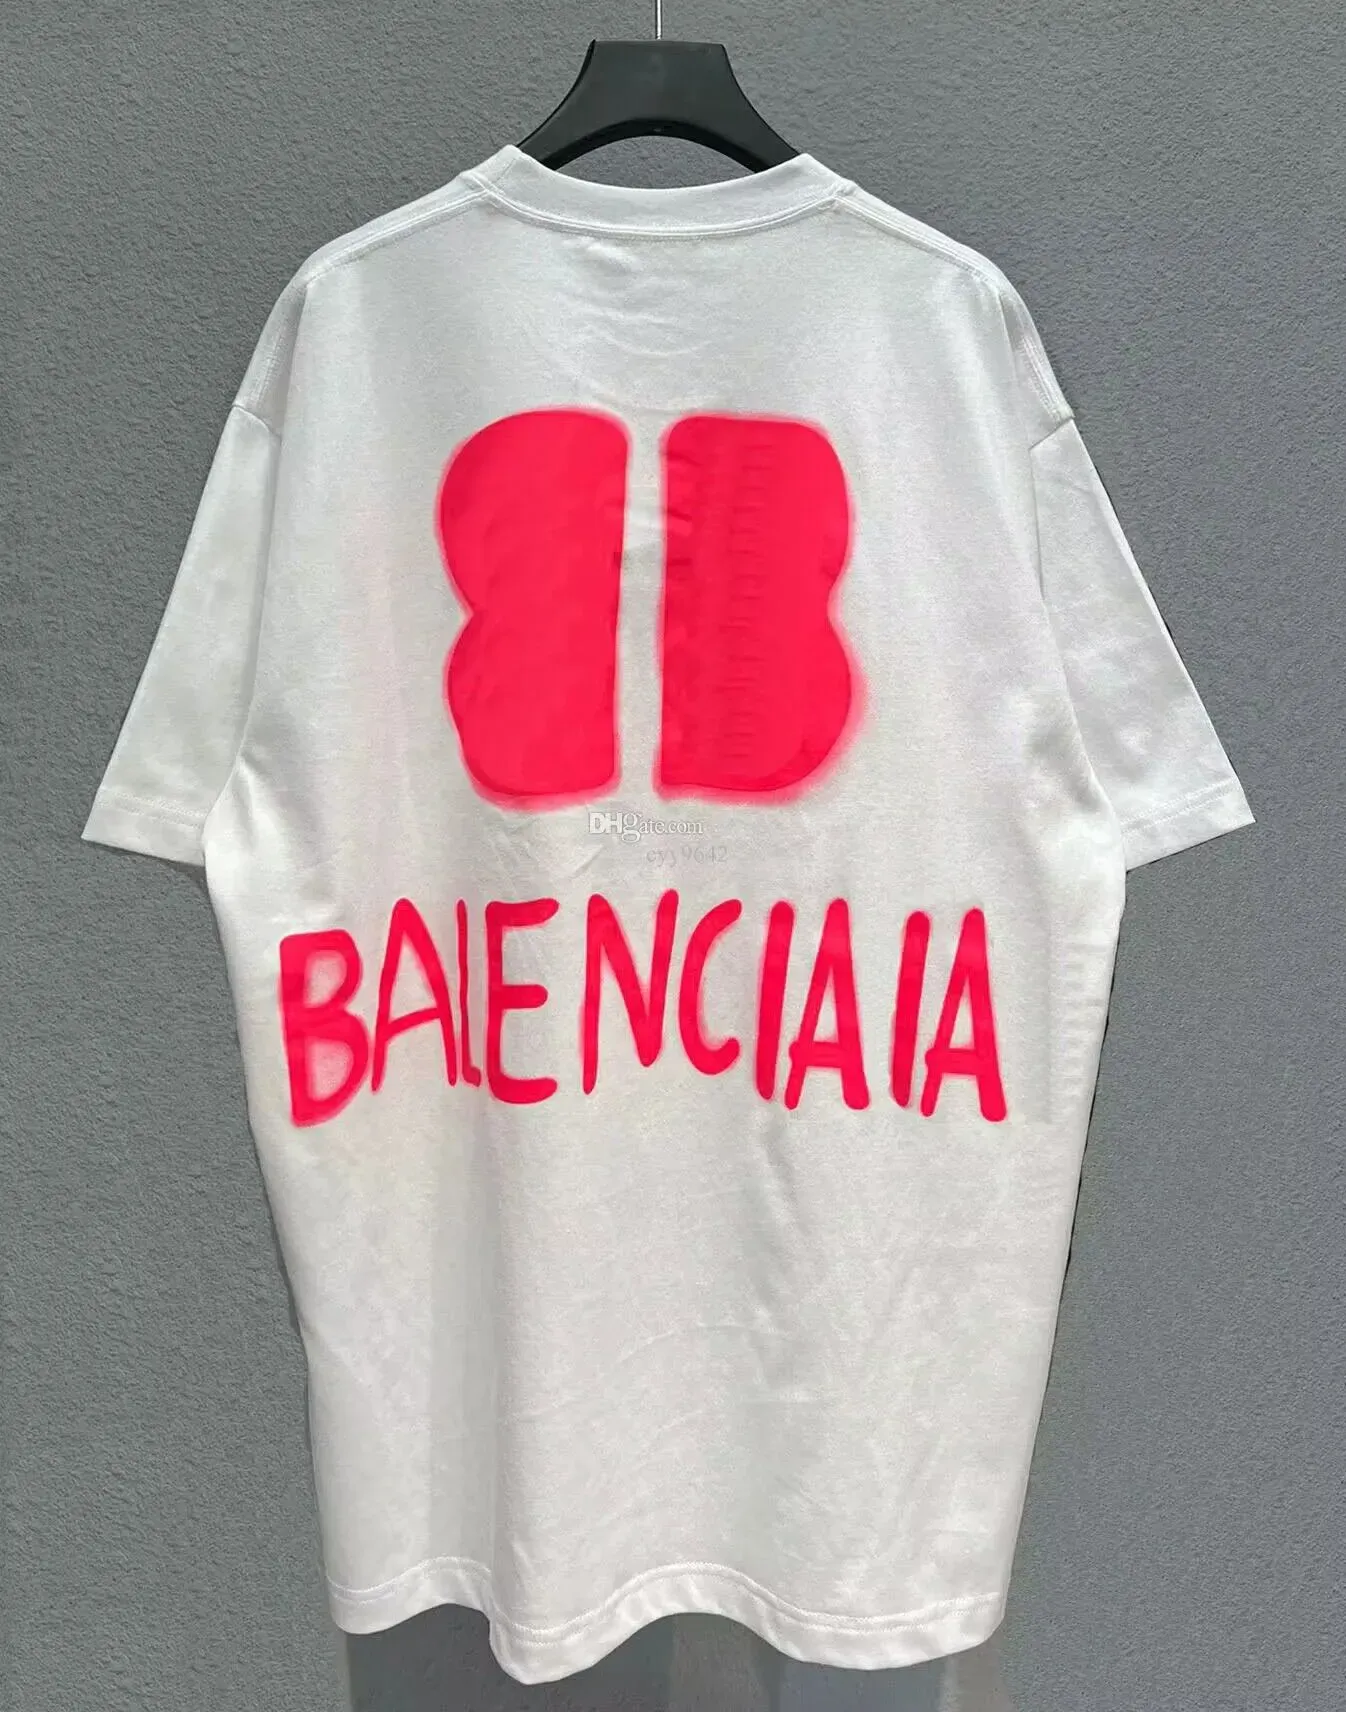 Balengiaga Shirt Hoodies de taille plus hommes T-shirt Femmes Men'scece Top Veste à capuche Fles Défilé Clothes Unisexe Hoodies Coat 19